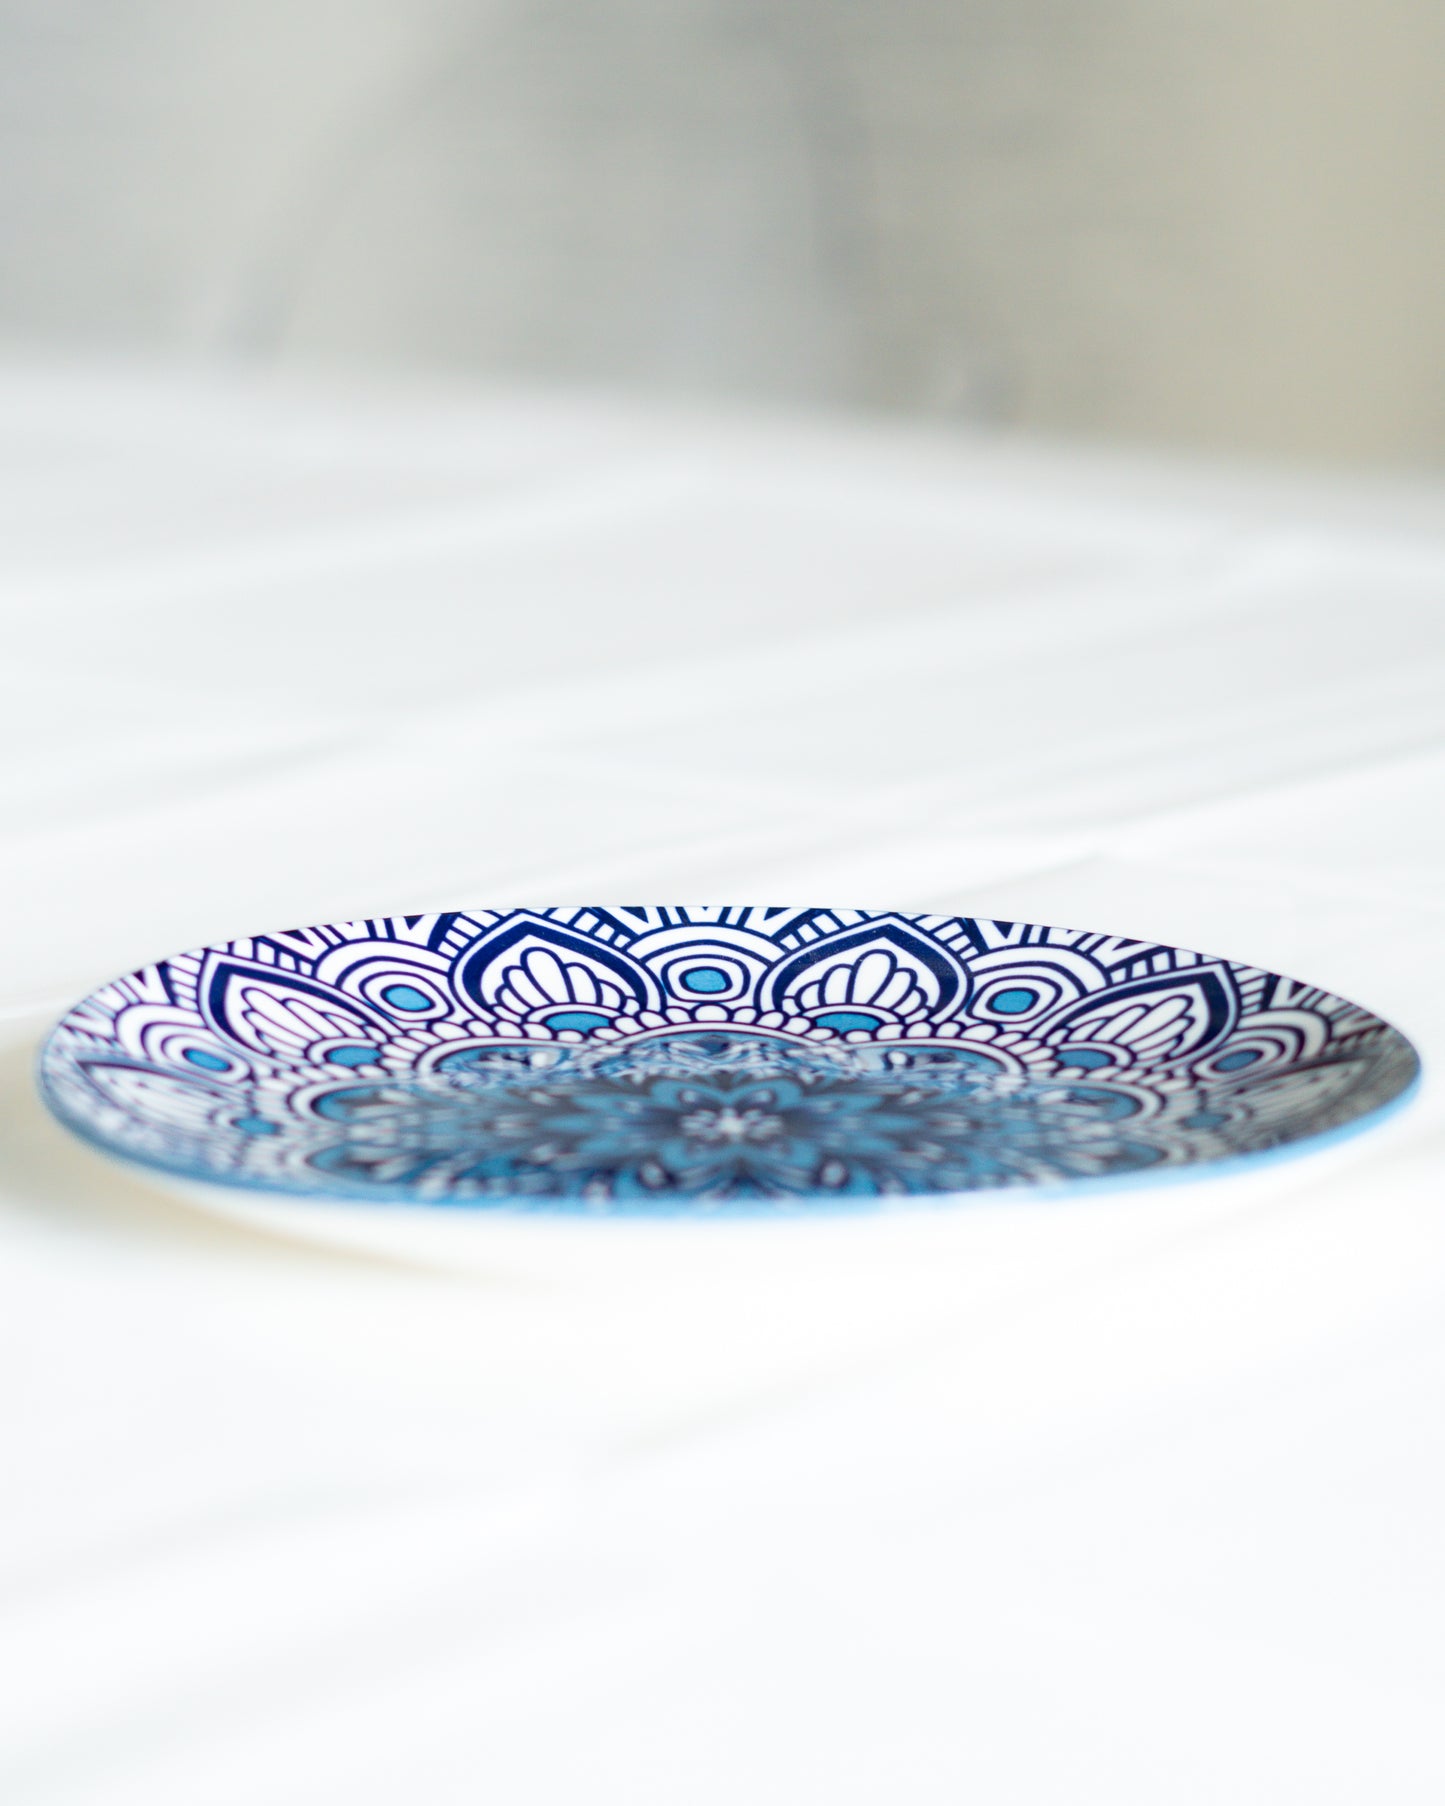 Éthique et traditionnelle, cette assiette bleue de Chefchaouen en porcelaine capture l'atmosphère magique du Maroc, parfaite pour embellir la décoration de n'importe quelle maison.